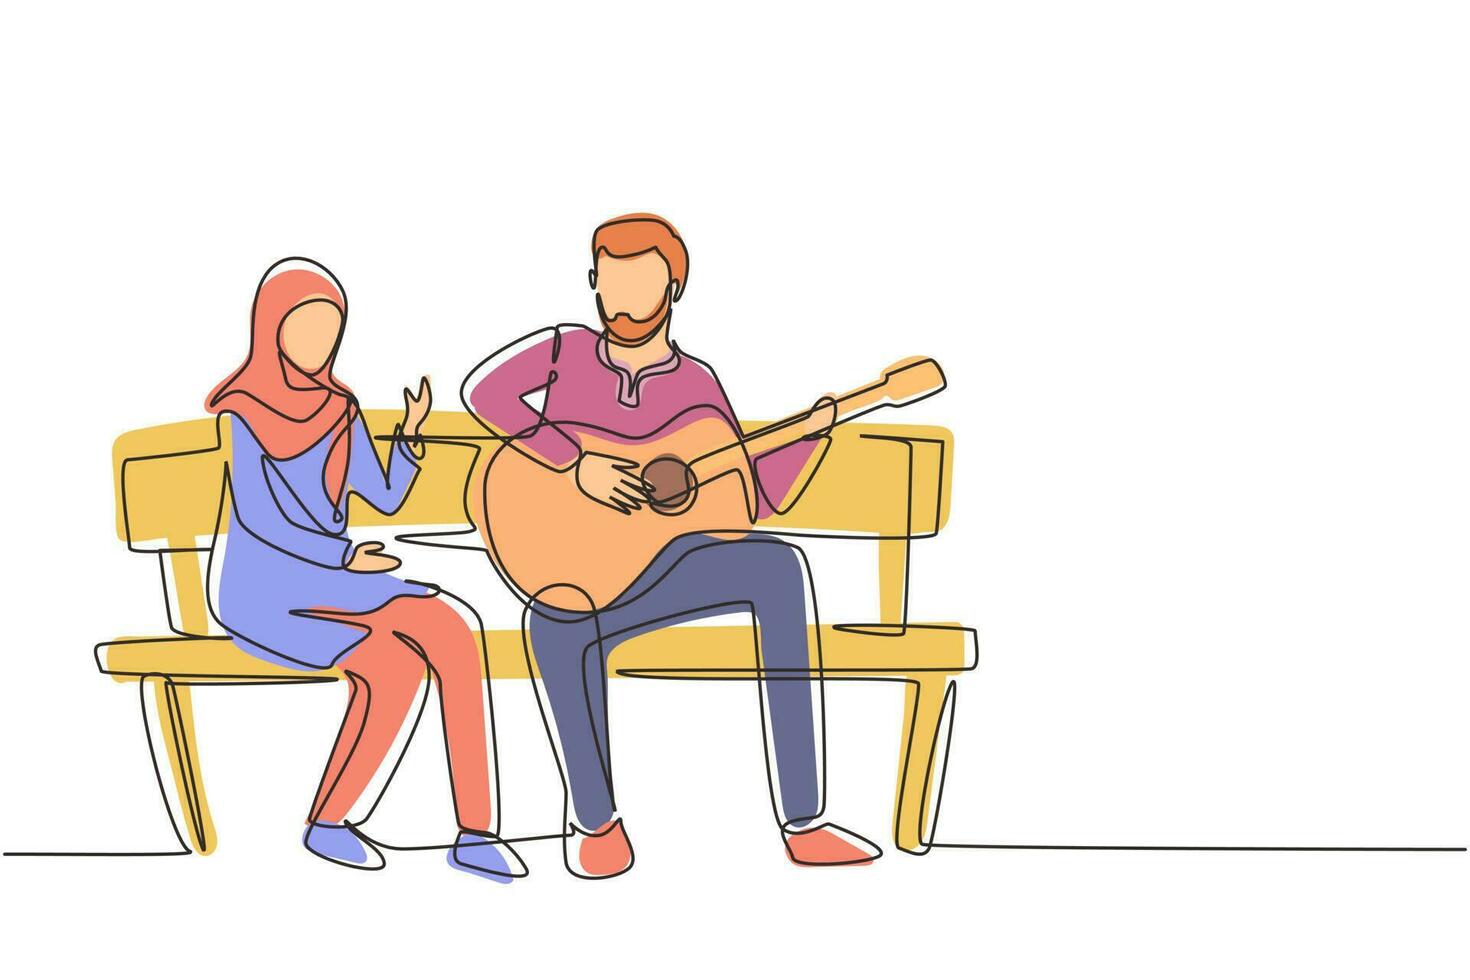 única linha contínua desenhando pessoas árabes sentadas no banco de madeira no parque. casal no encontro, homem tocando música no violão, garota ouve e canta juntos. uma linha desenhar ilustração em vetor gráfico